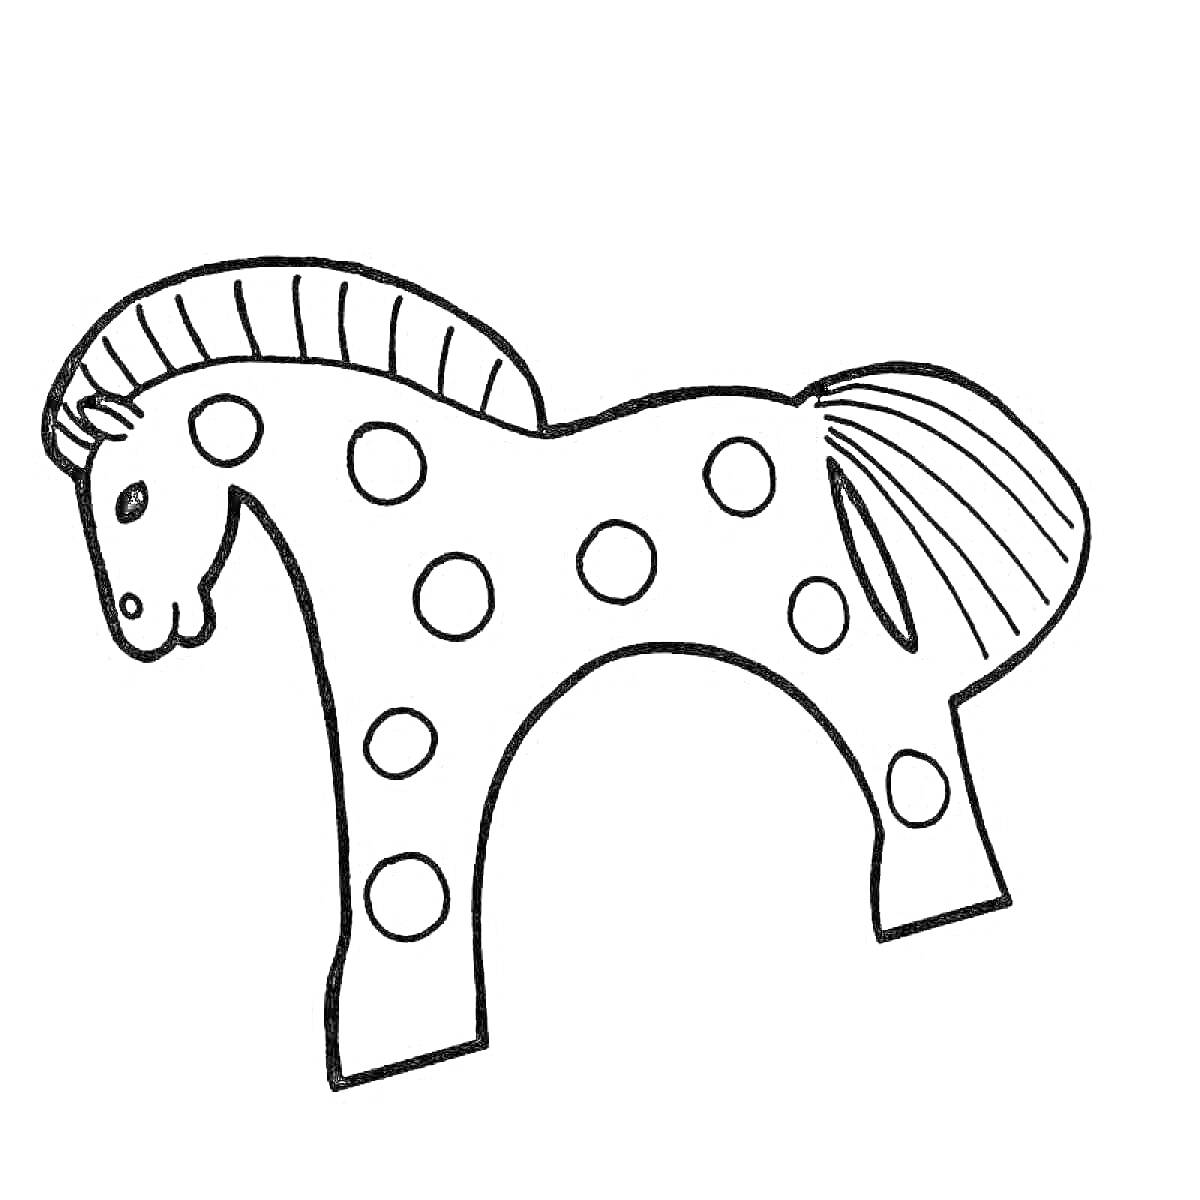 Раскраска Лошадка в стиле дымковская игрушка с крупными точками, полосатой гривой и хвостом